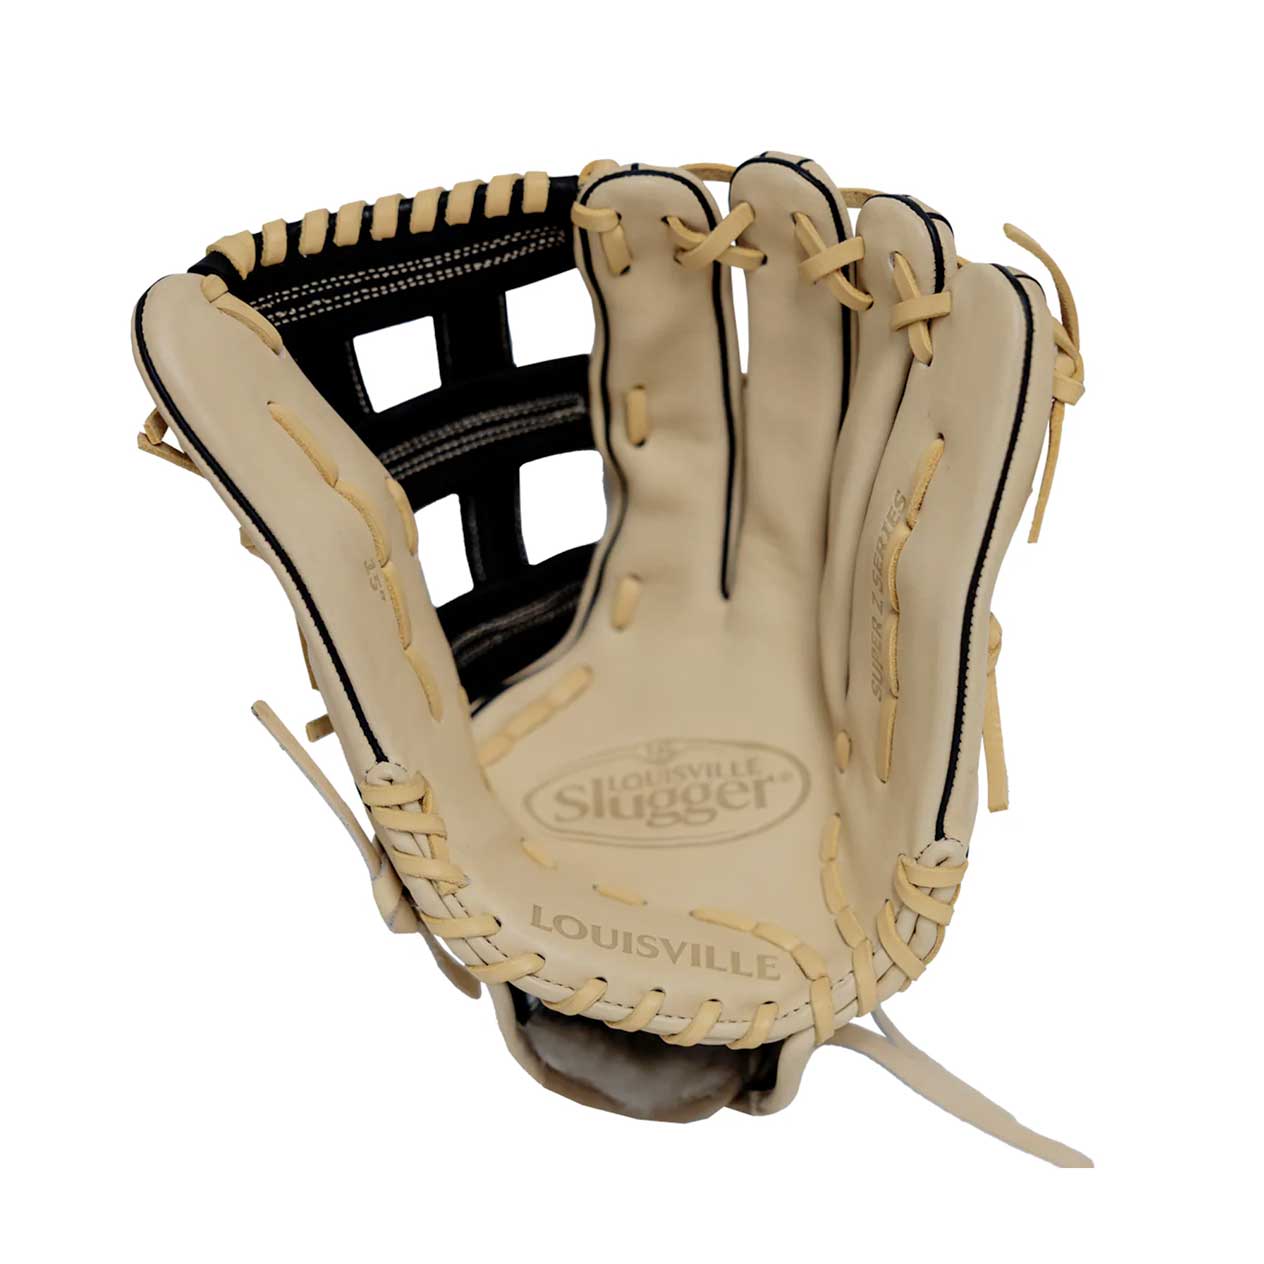 Louisville Super Z Slowpitch Fielding Glove Cream/Black/Gold 15"